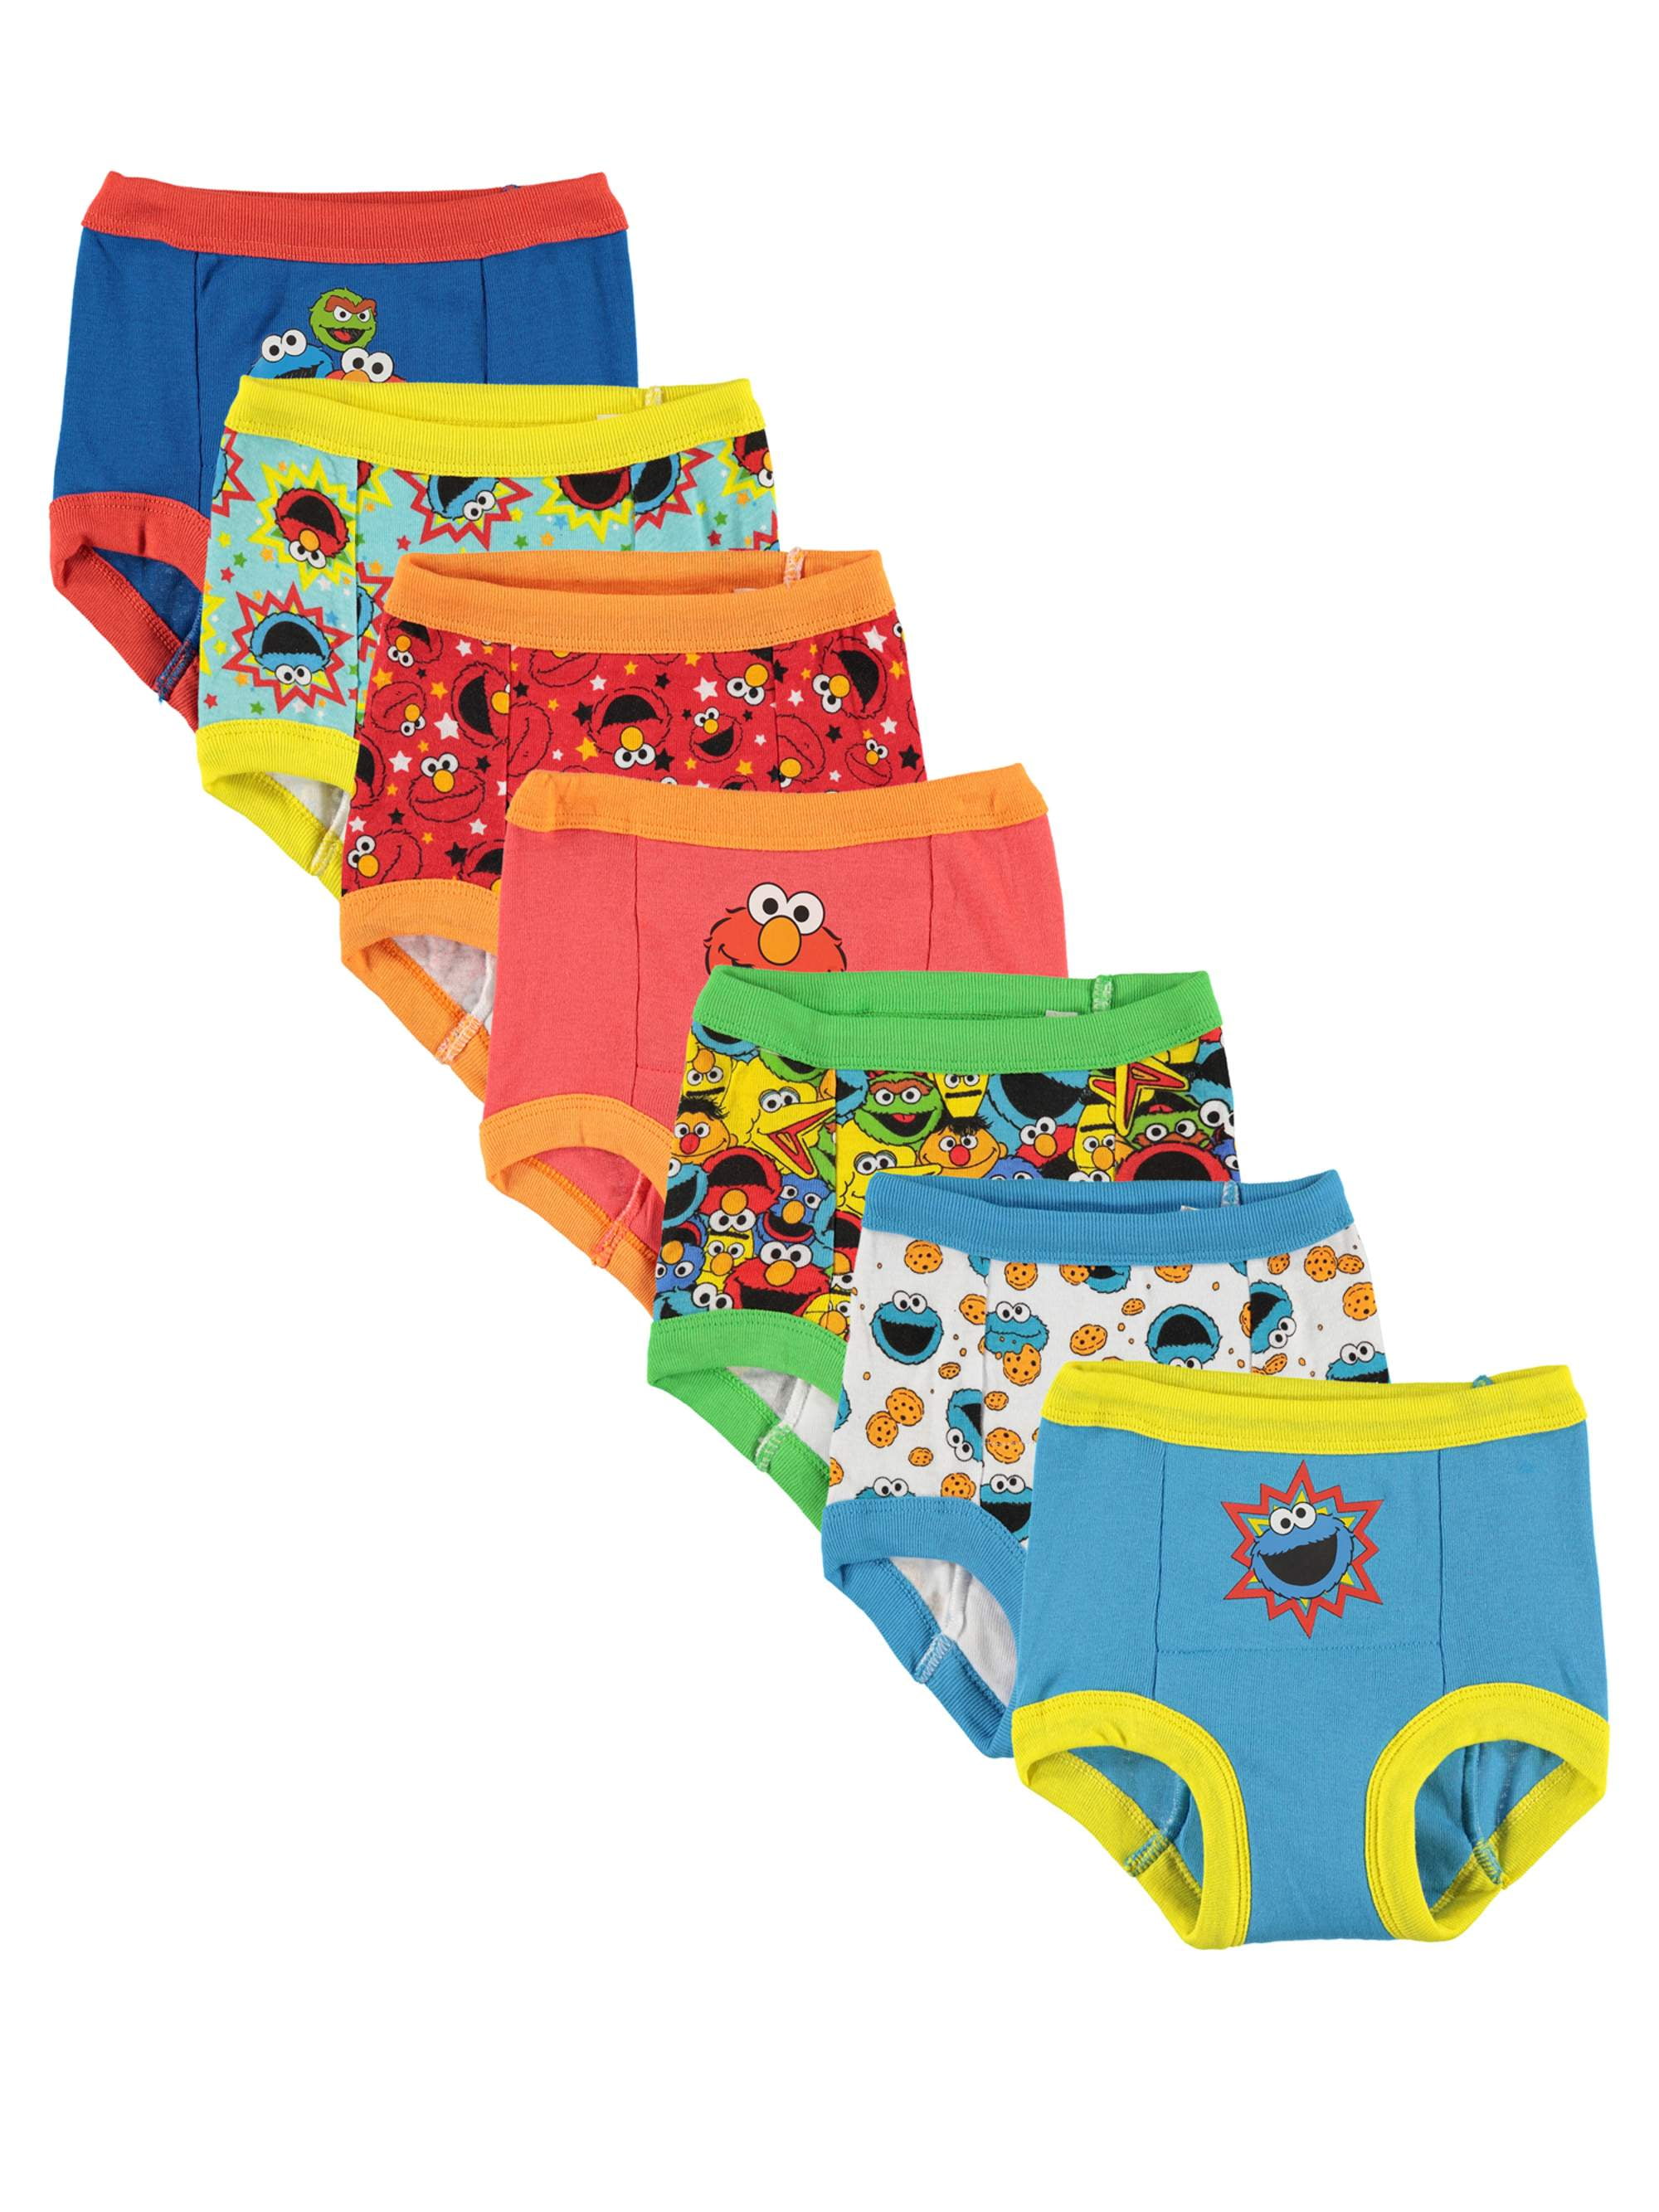 Sesame Street Toddler Boy Training Underwear, 7-Pack, Sizes 18M-4T 